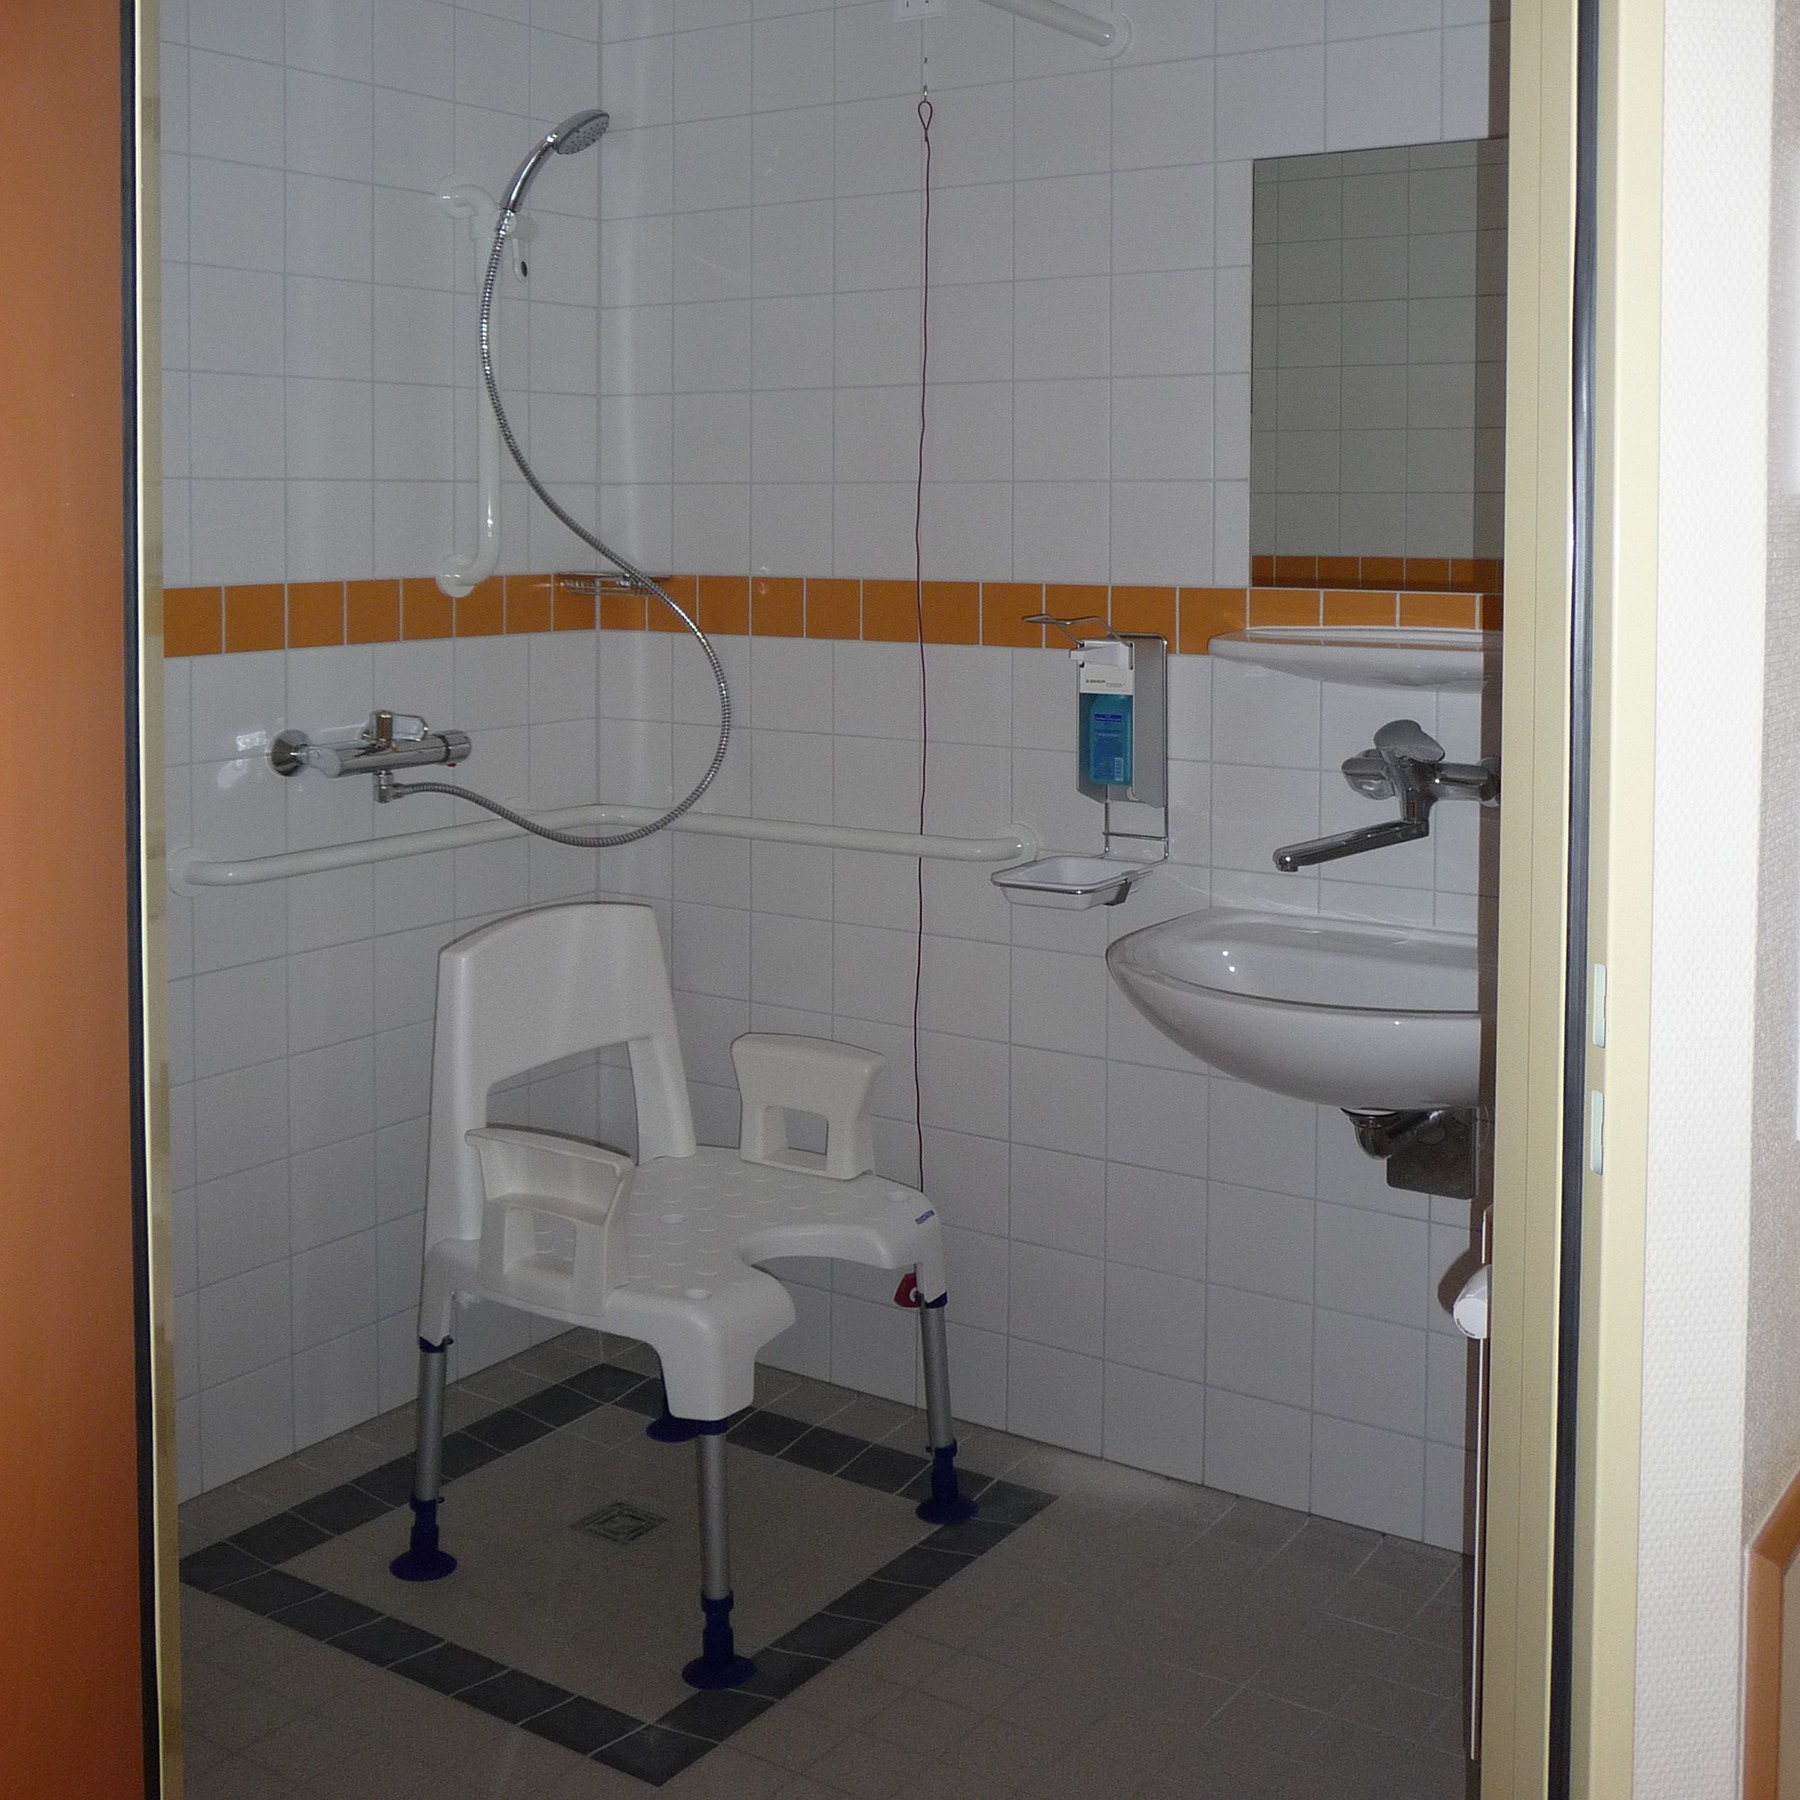 Blick in die Sanitärzelle eines Bettenzimmers © 2009 Betrieb für Bau und Liegenschaften Mecklenburg-Vorpommern